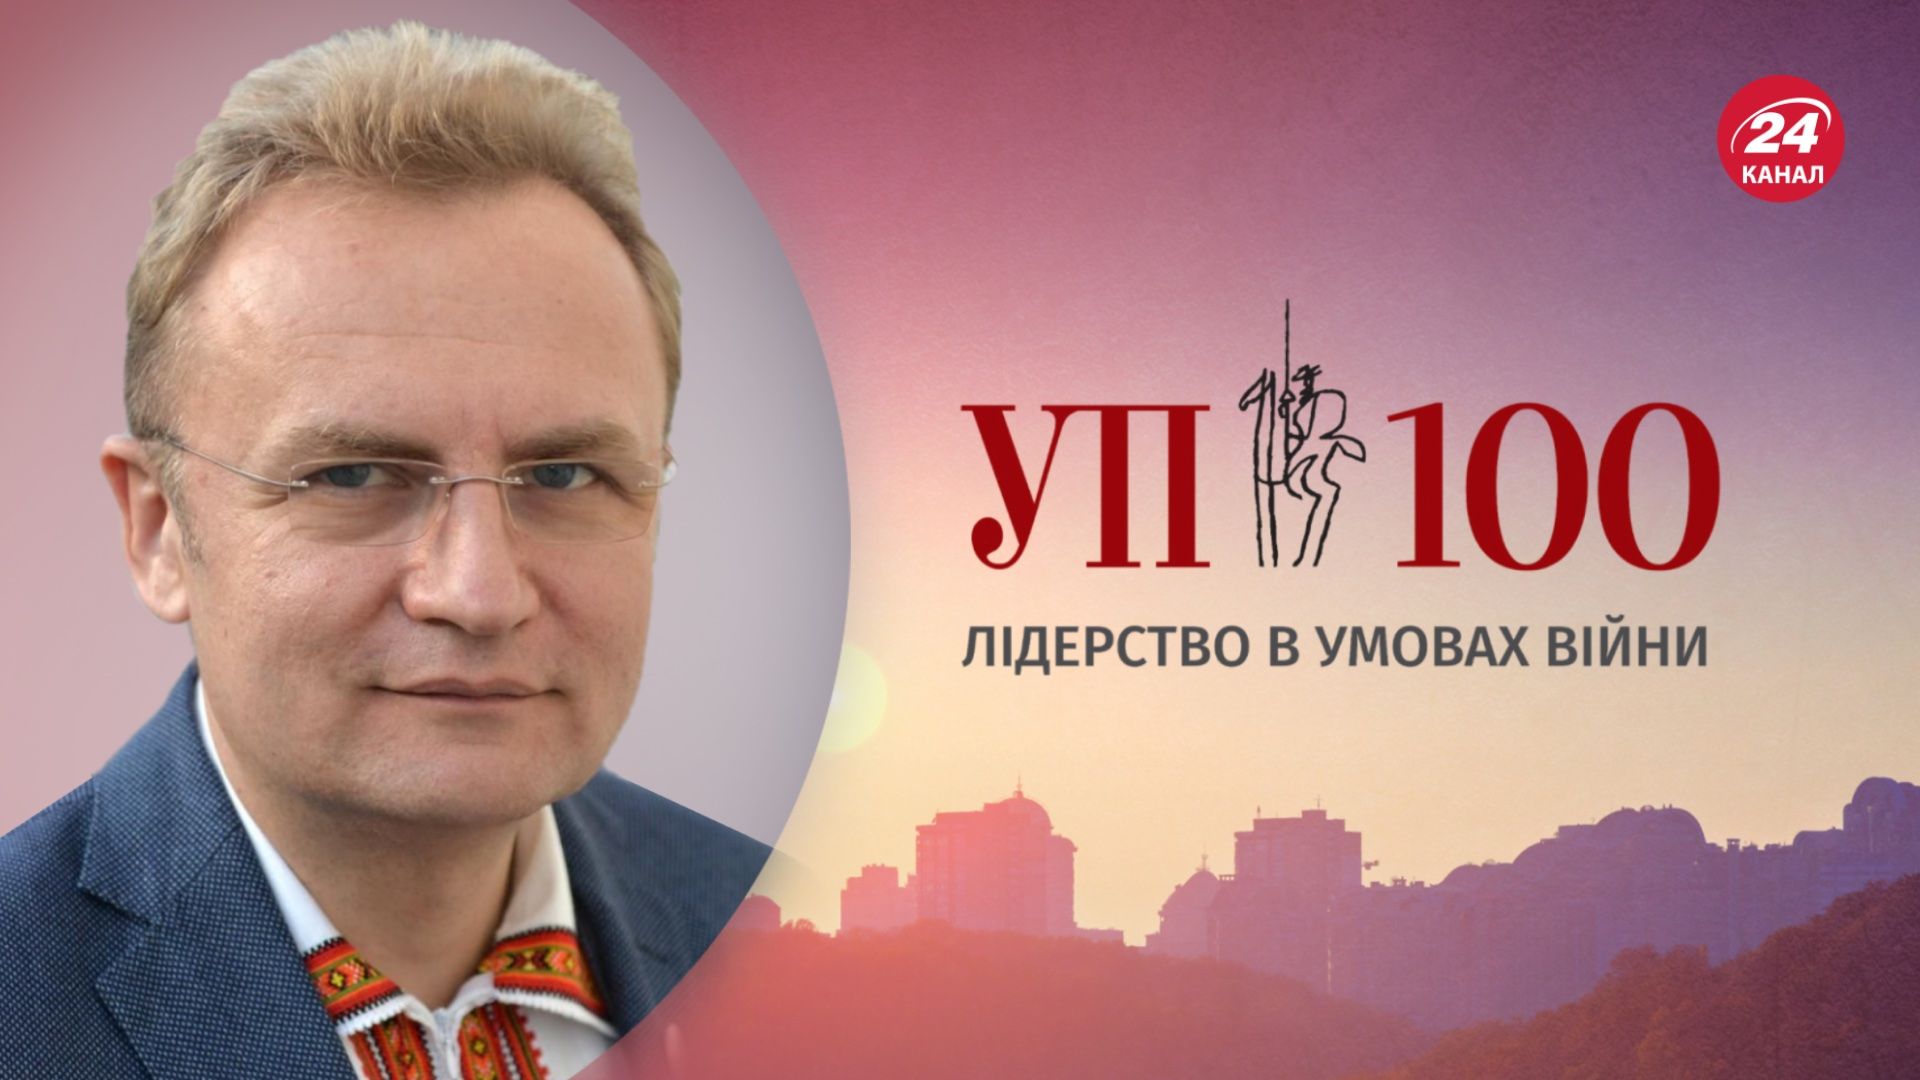 Андрей Садовый попал в рейтинг УП-100